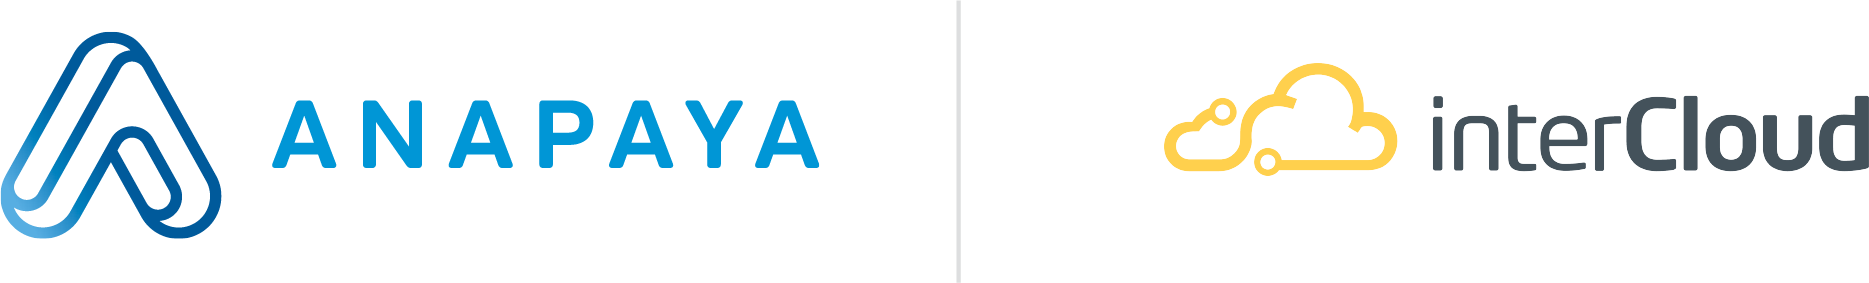 Anapaya and InterCloud logos